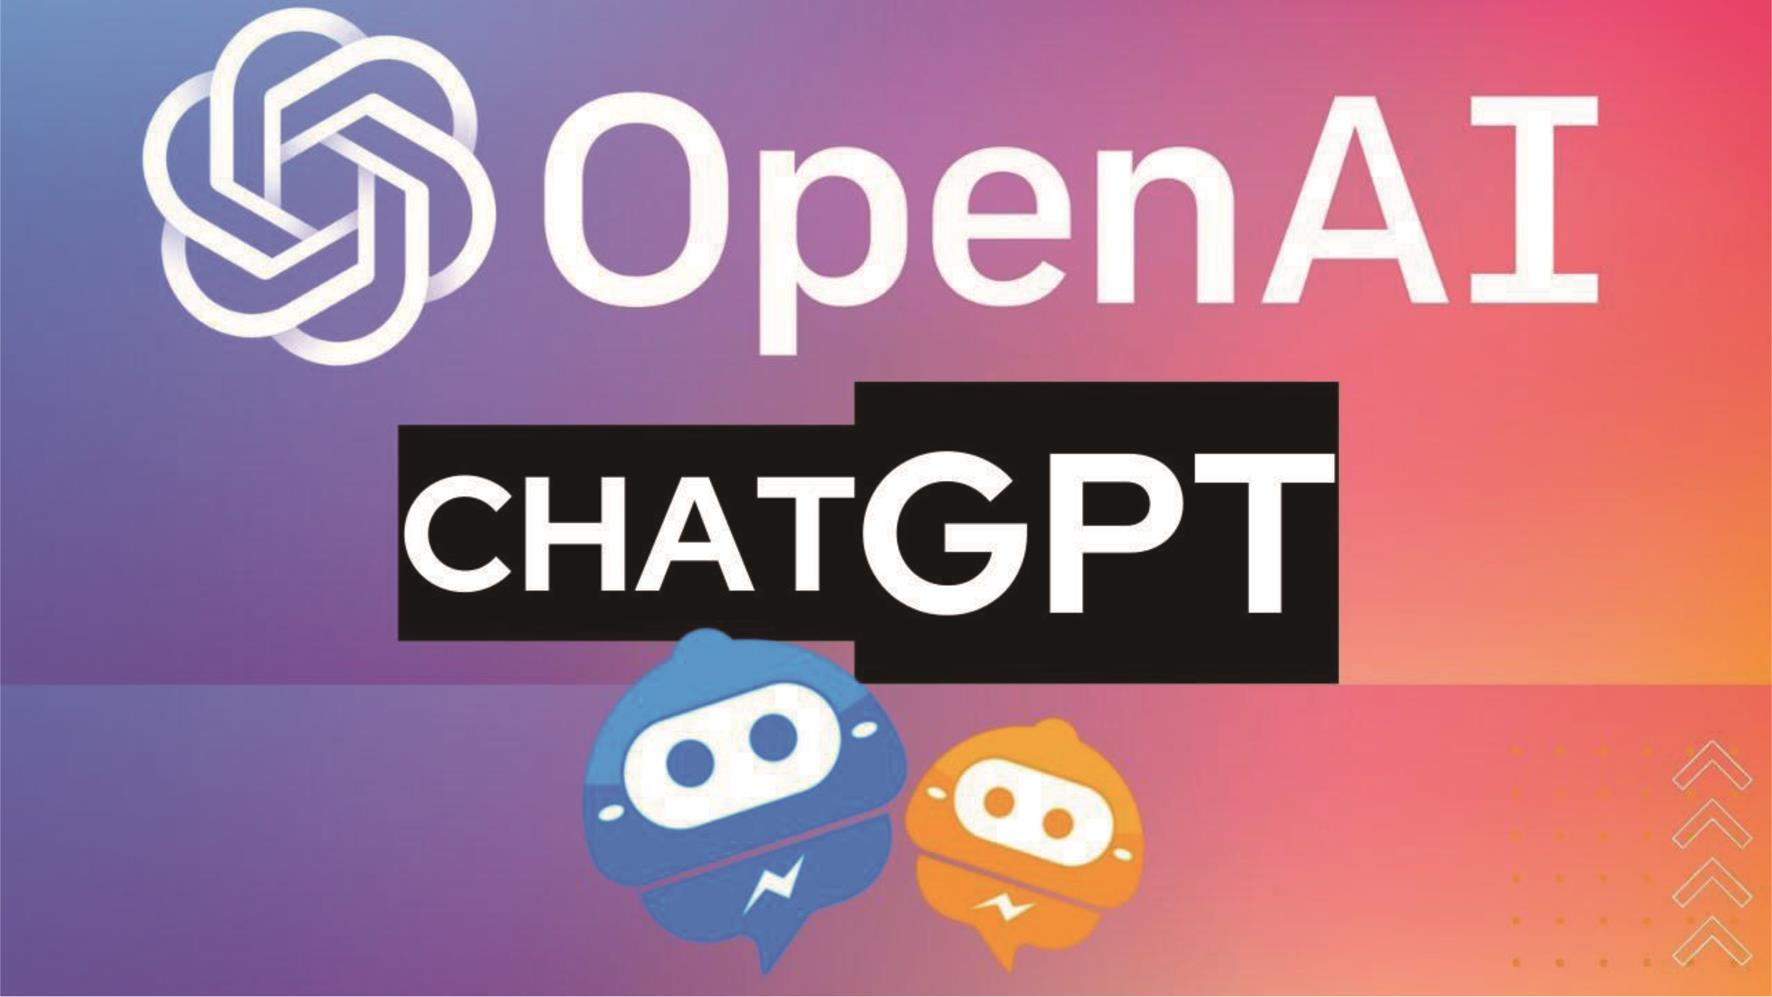 ChatGPT是由OpenAI公司开发的，这是一家总部位于加州的公司，以其GPT-3软件而闻名。